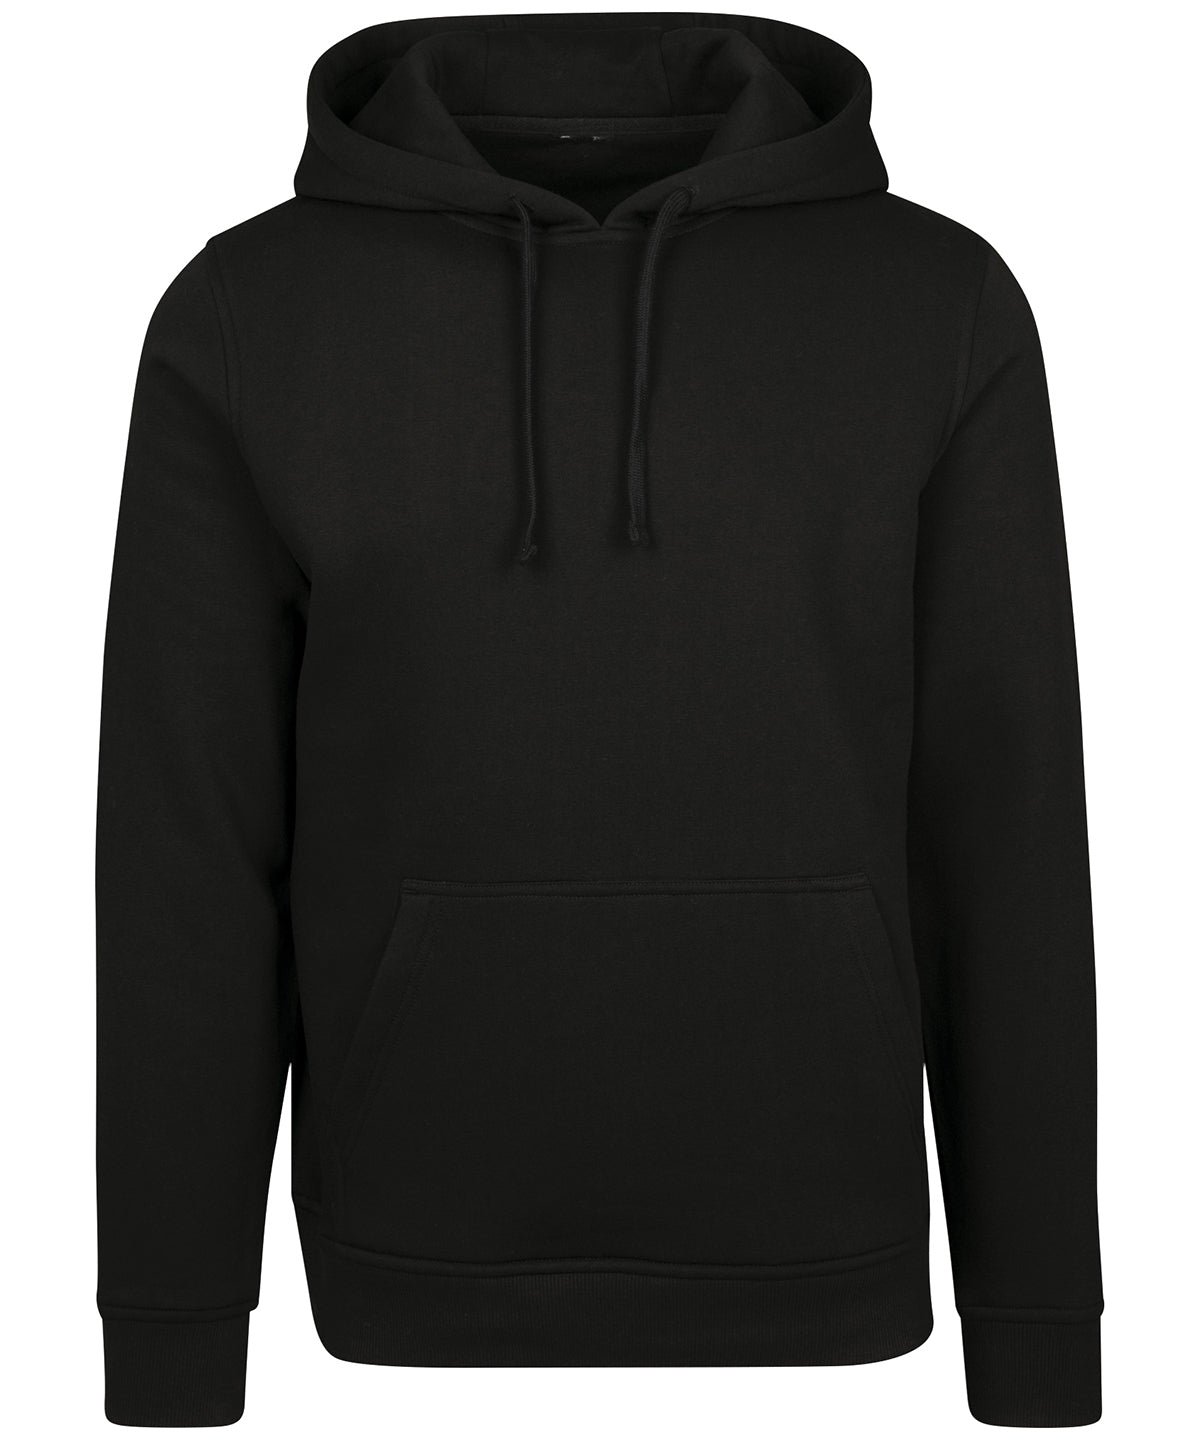 Personalised Hoodies - Black Build Your Brand Merch hoodie